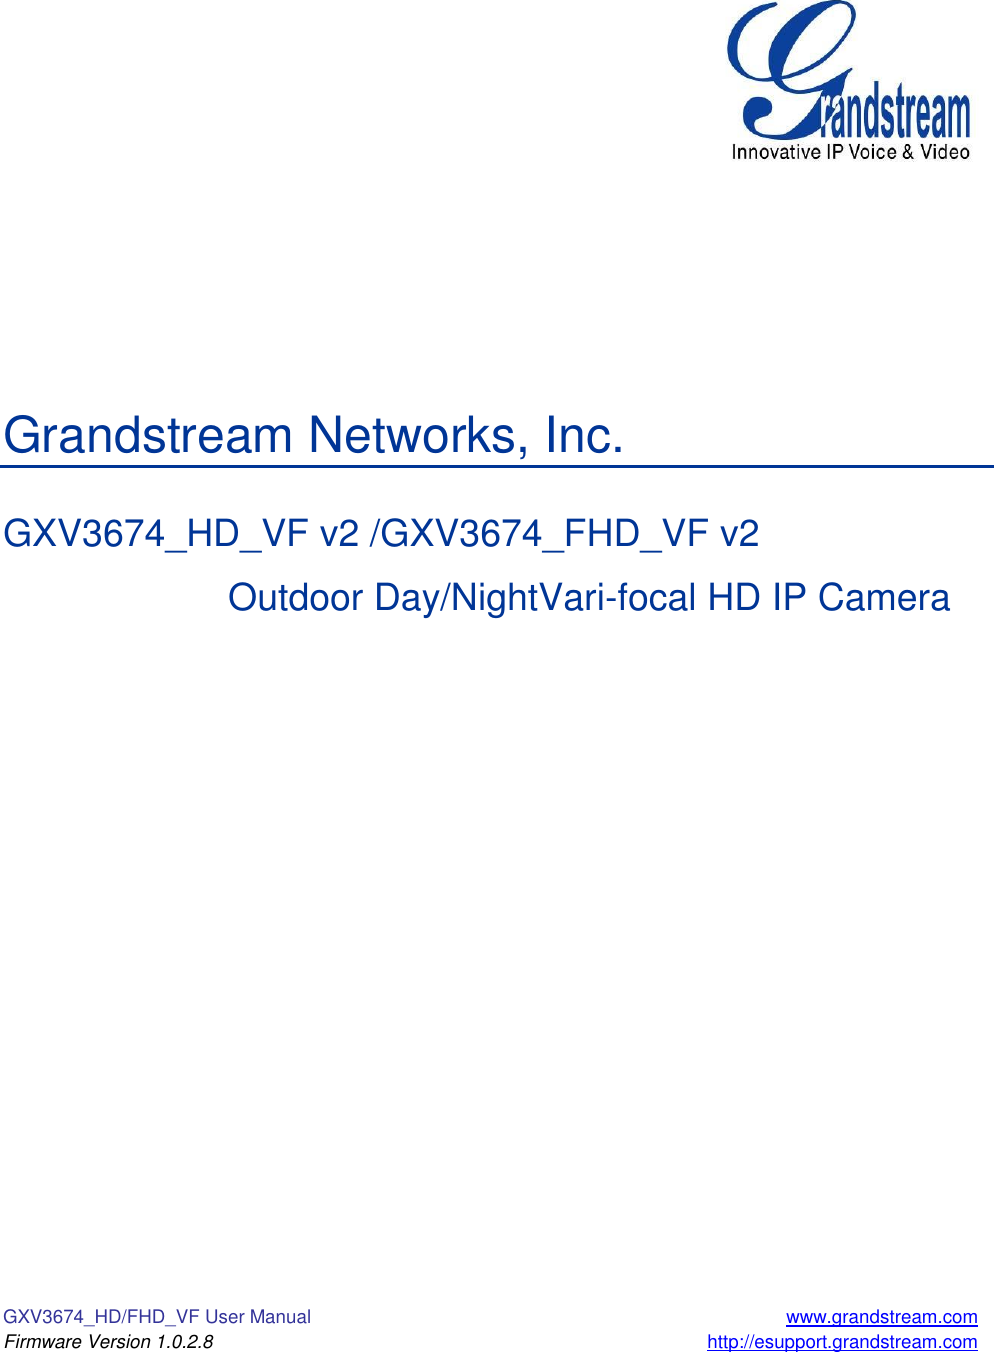 GXV3674_HD/FHD_VF User Manual  www.grandstream.com Firmware Version 1.0.2.8 http://esupport.grandstream.com             Grandstream Networks, Inc.  GXV3674_HD_VF v2 /GXV3674_FHD_VF v2       Outdoor Day/NightVari-focal HD IP Camera  